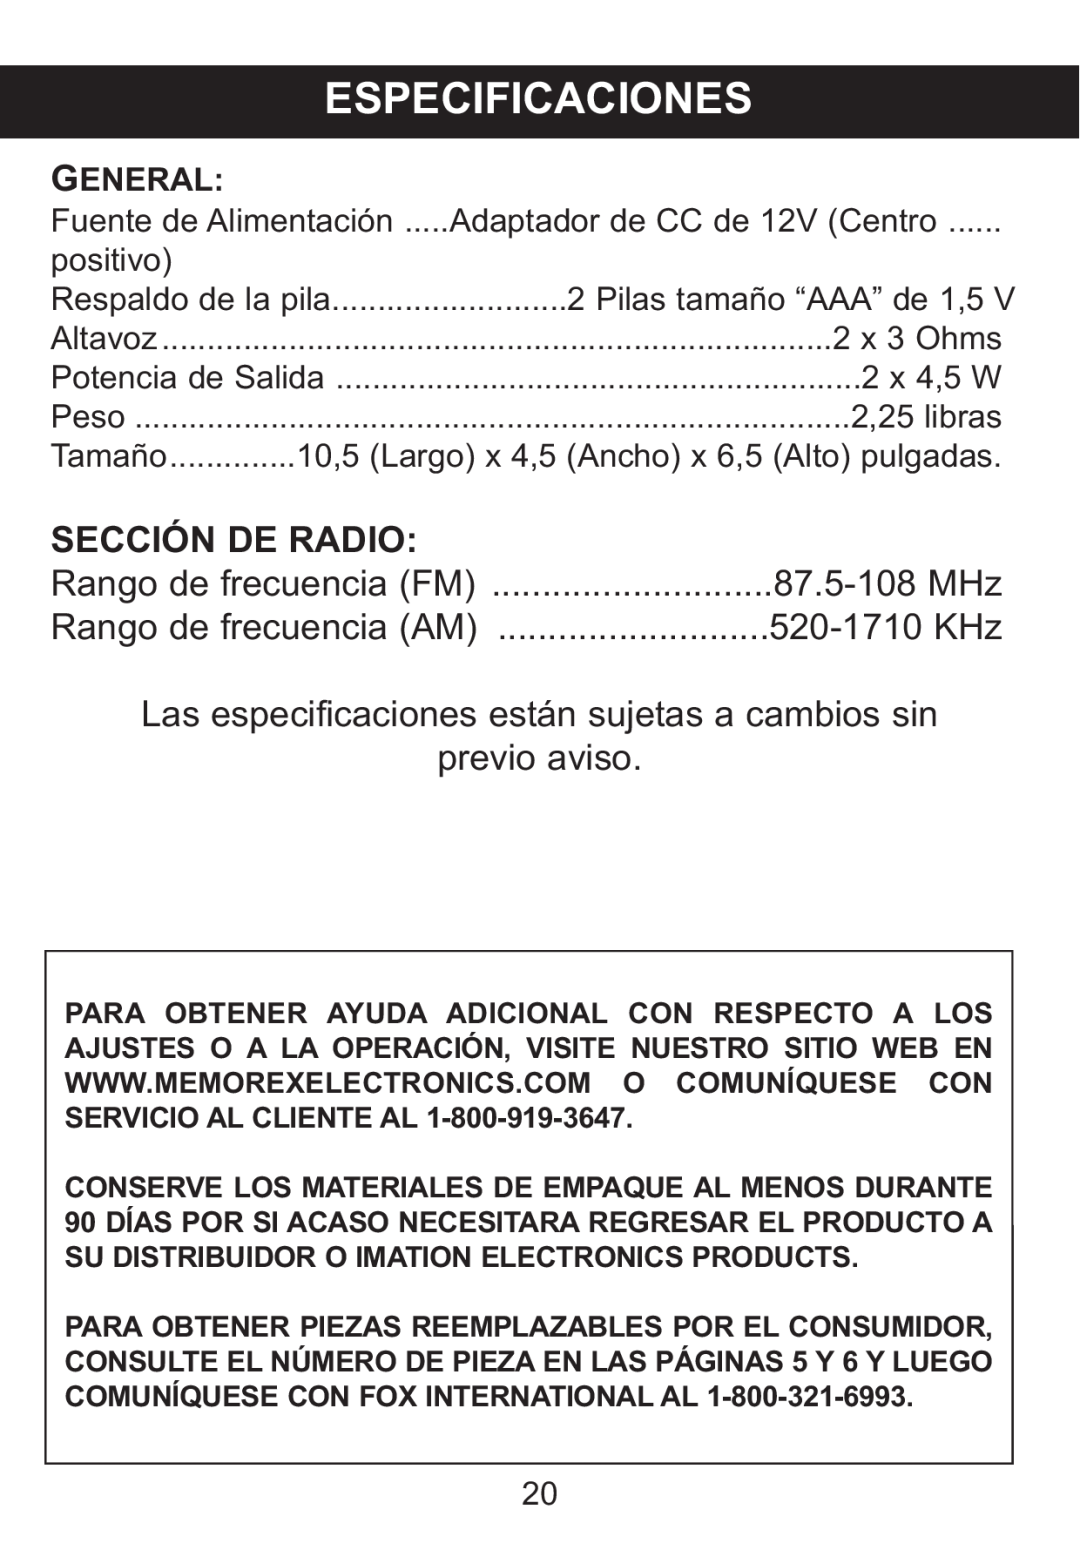 Memorex Mi4014 manual Especificaciones, Rango de frecuencia FM, 520-1710 KHz, 87.5-108 MHz, General 